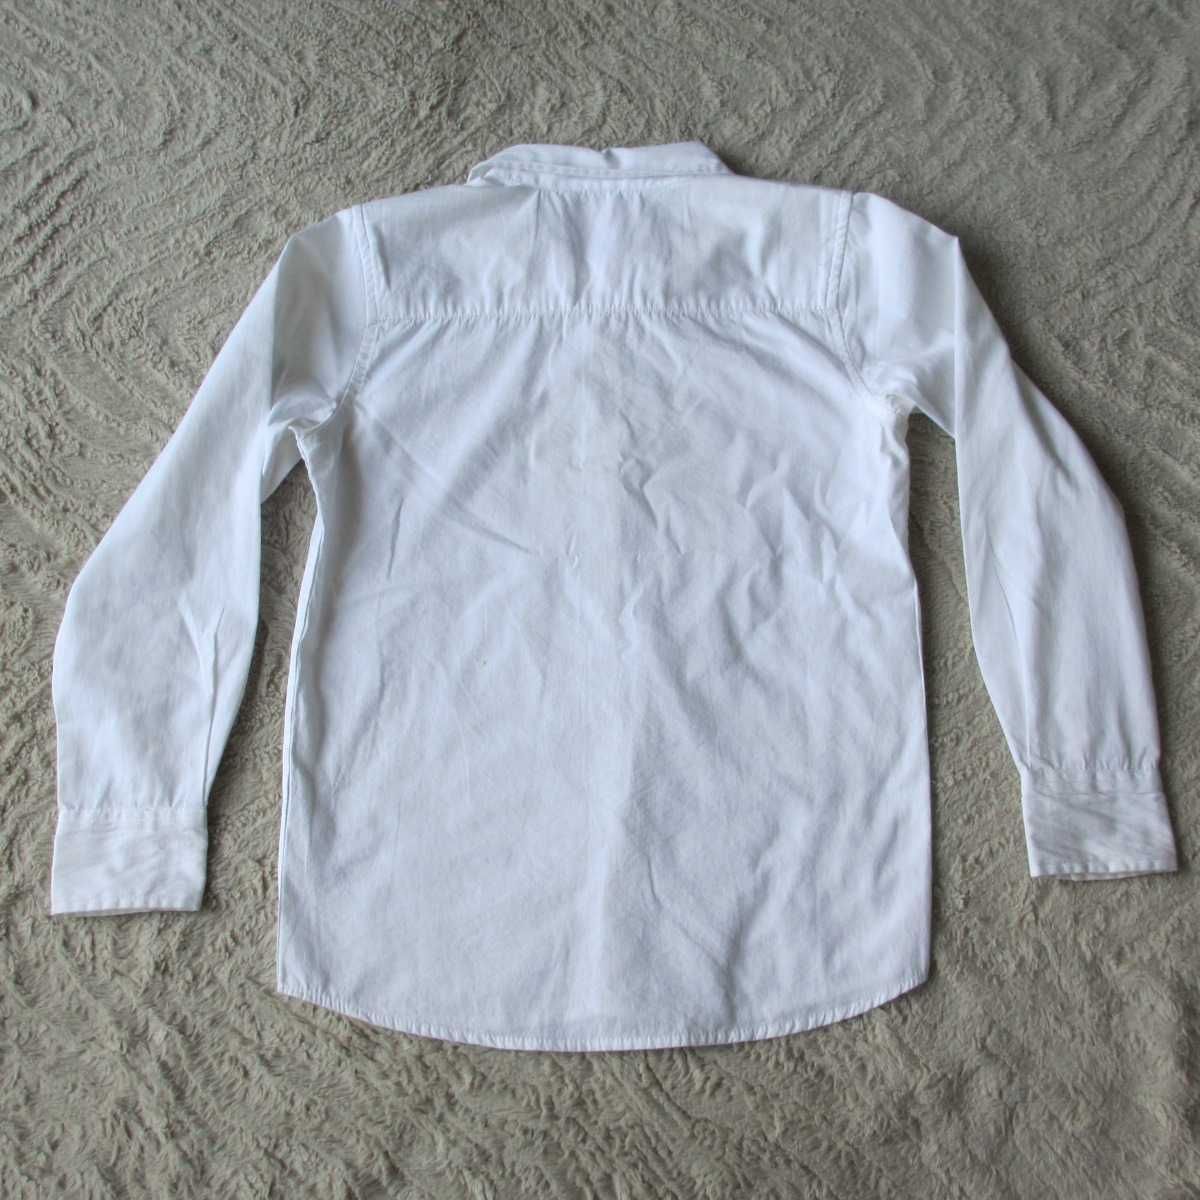 biała bluzka koszulowa dla chłopca